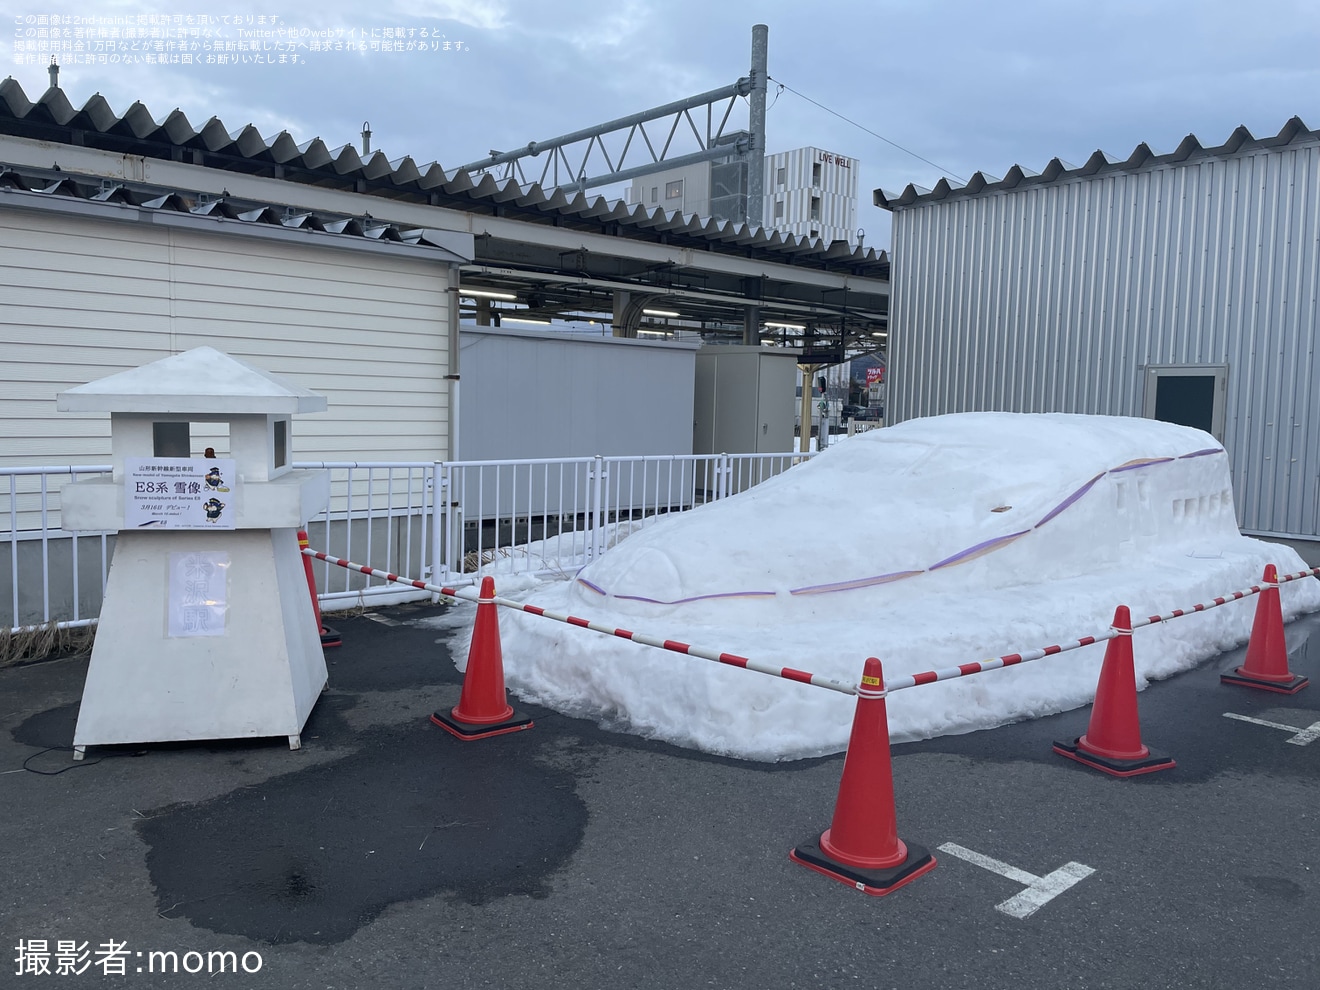 【JR東】米沢駅前にE8系の雪像が展示の拡大写真